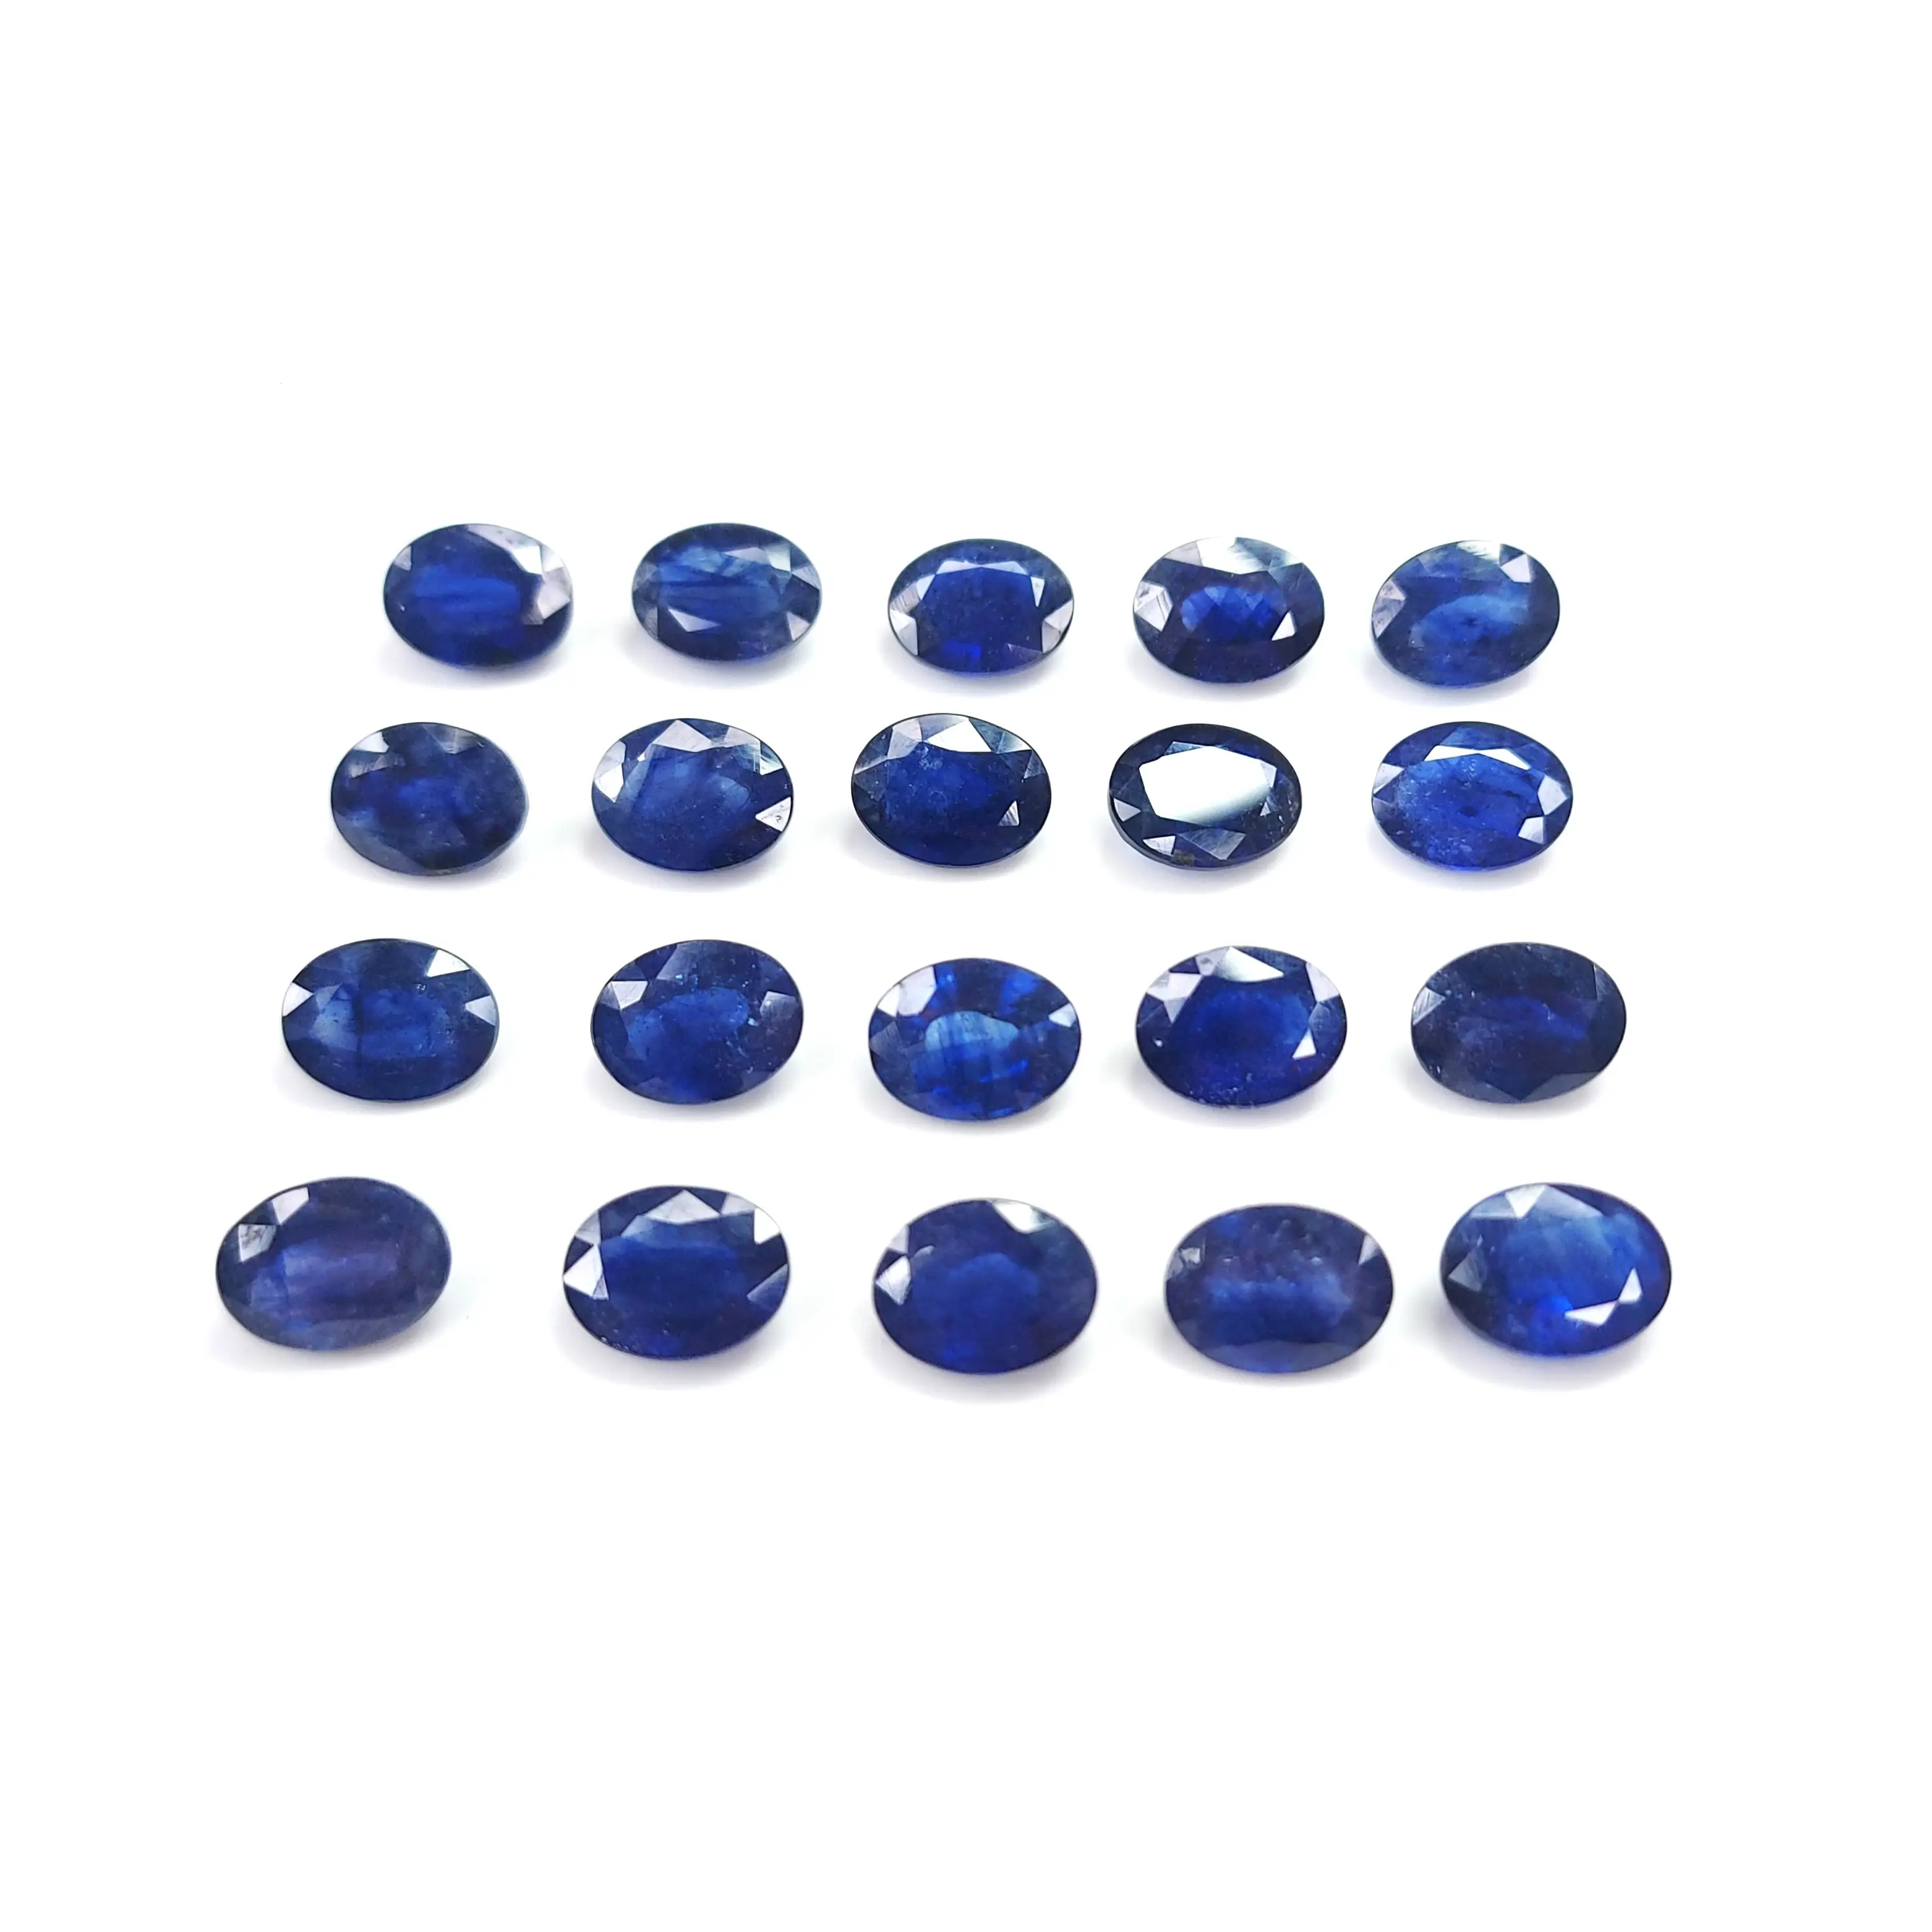 Forma ovalada 10x8mm Zafiro azul natural Piedra preciosa genuina para la fabricación de joyas disponible en la exportación